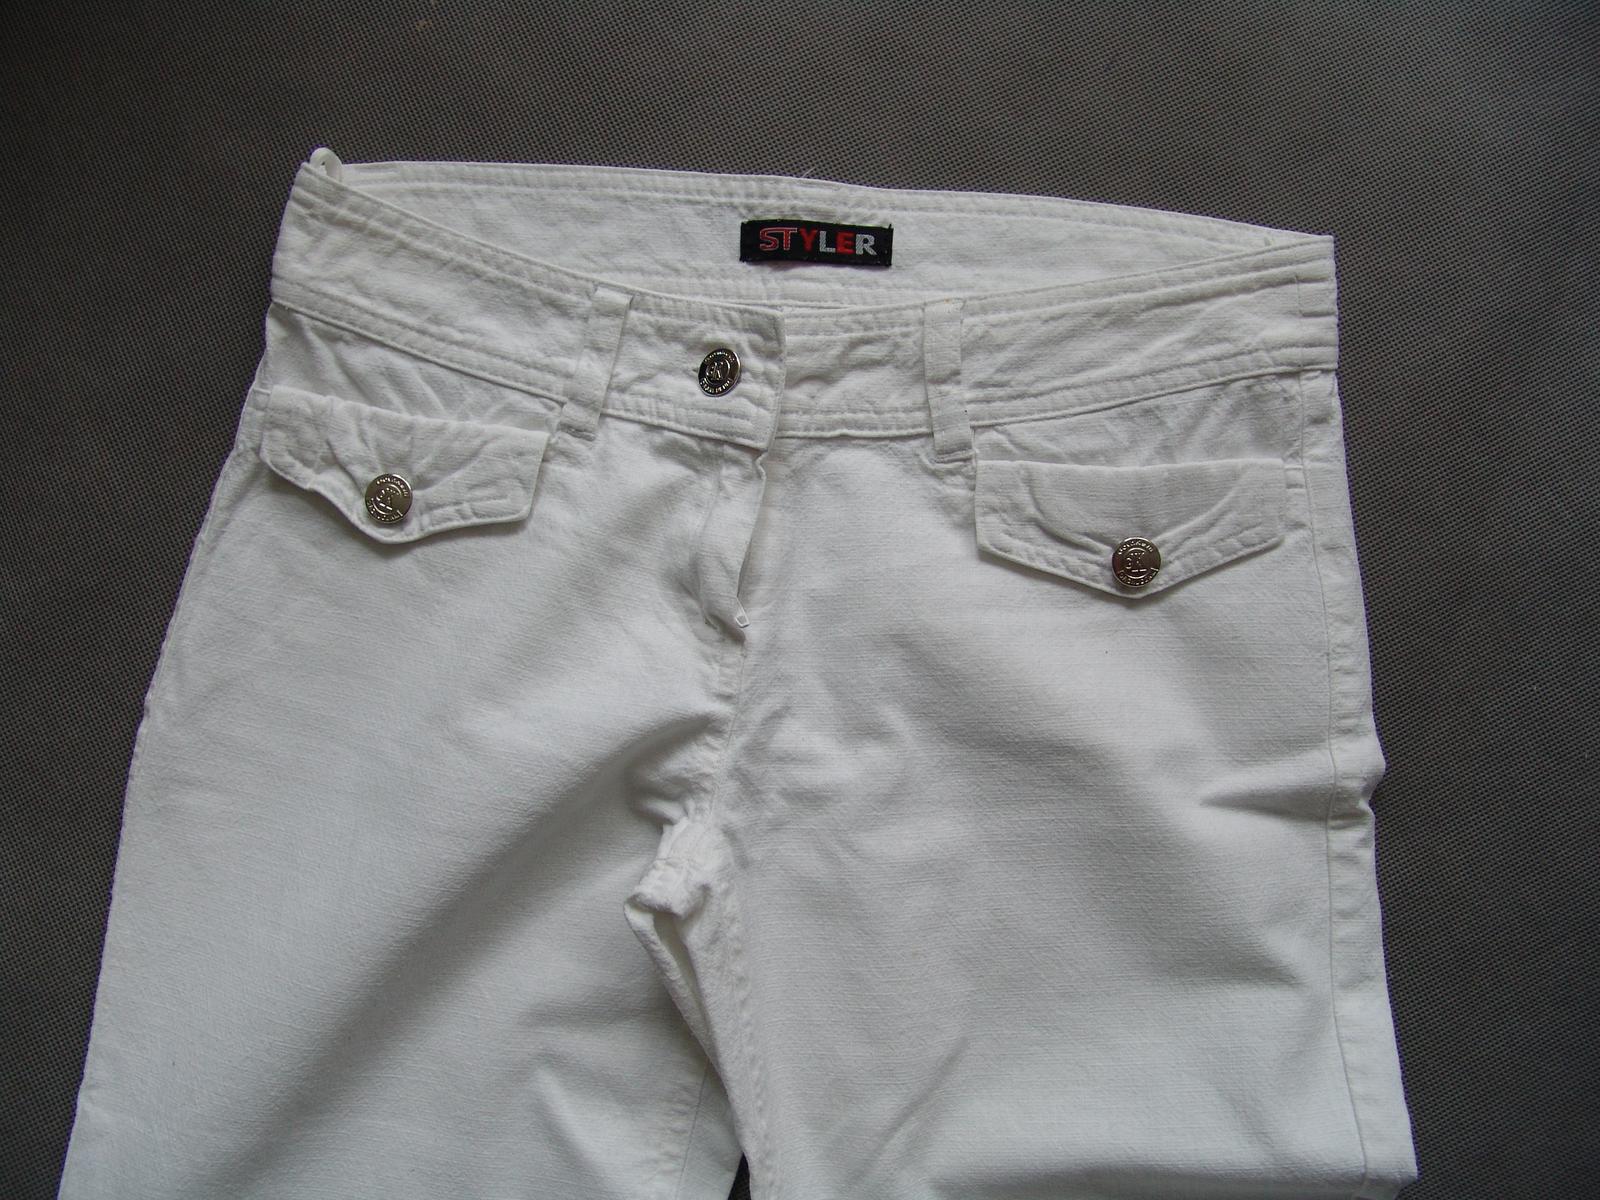 Bílé kalhoty - Obrázek č. 3